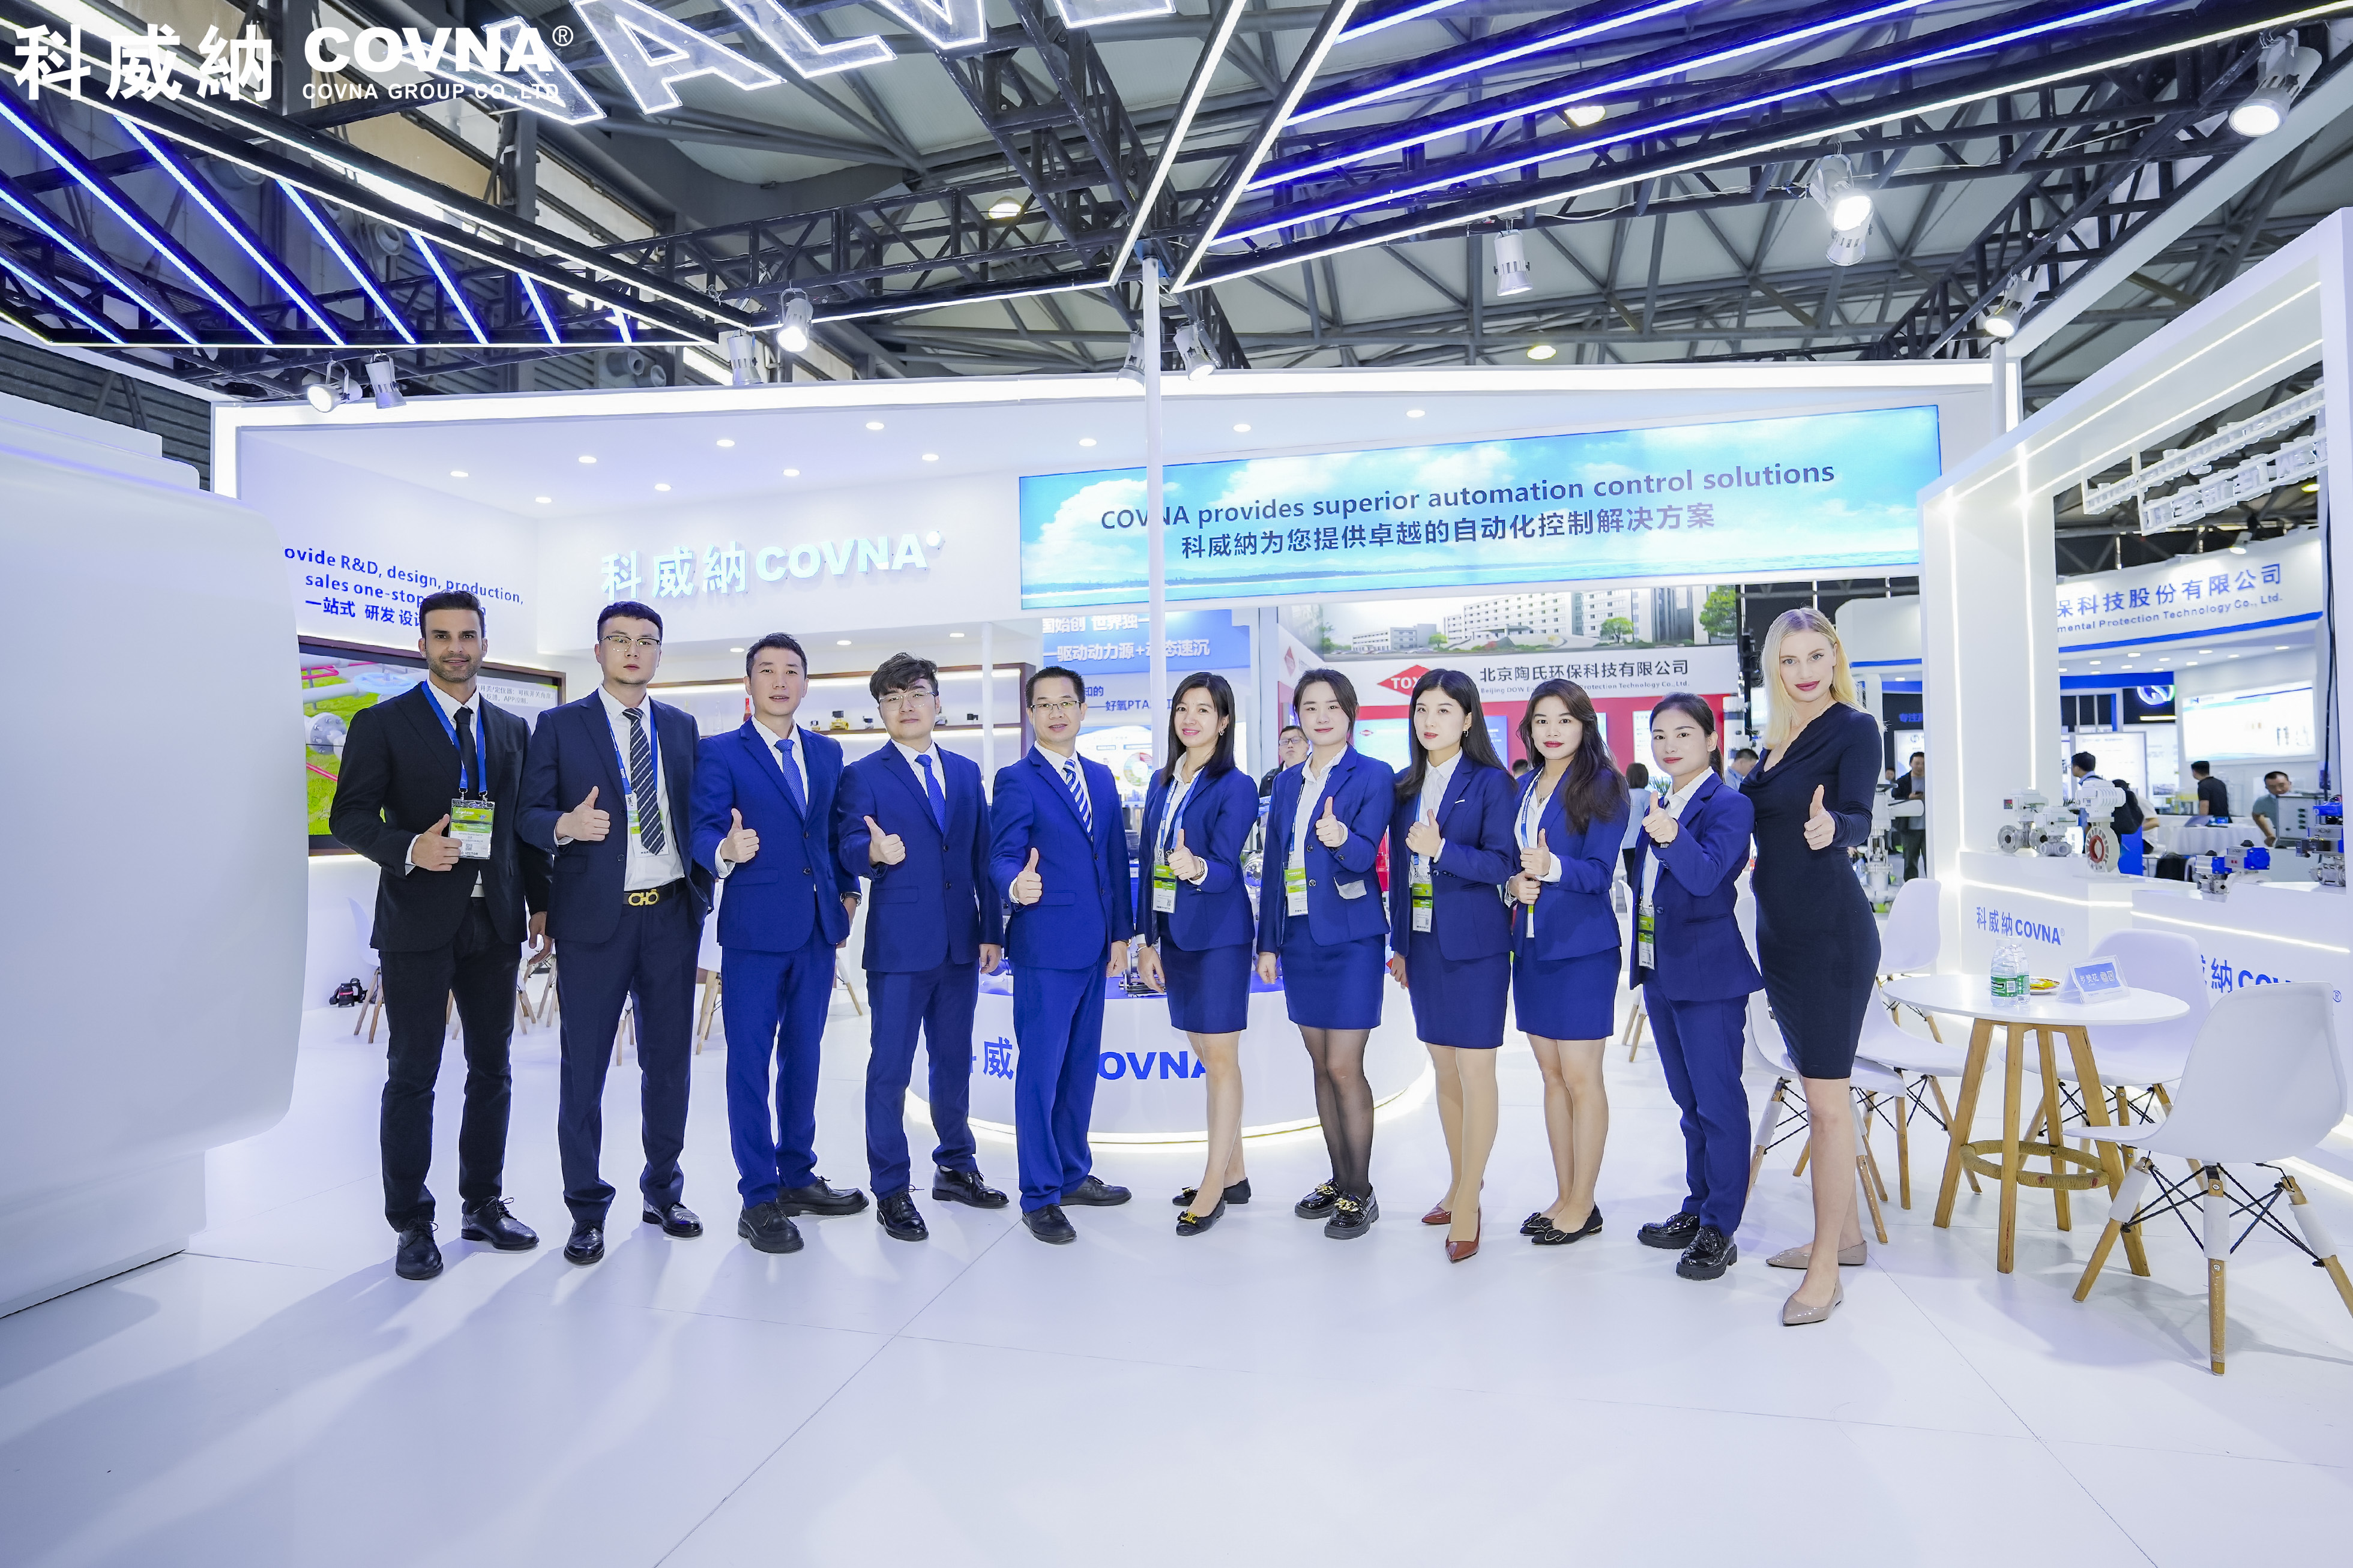 Resenha da Exposição | Lançamento do novo produto da COVNA em Xangai